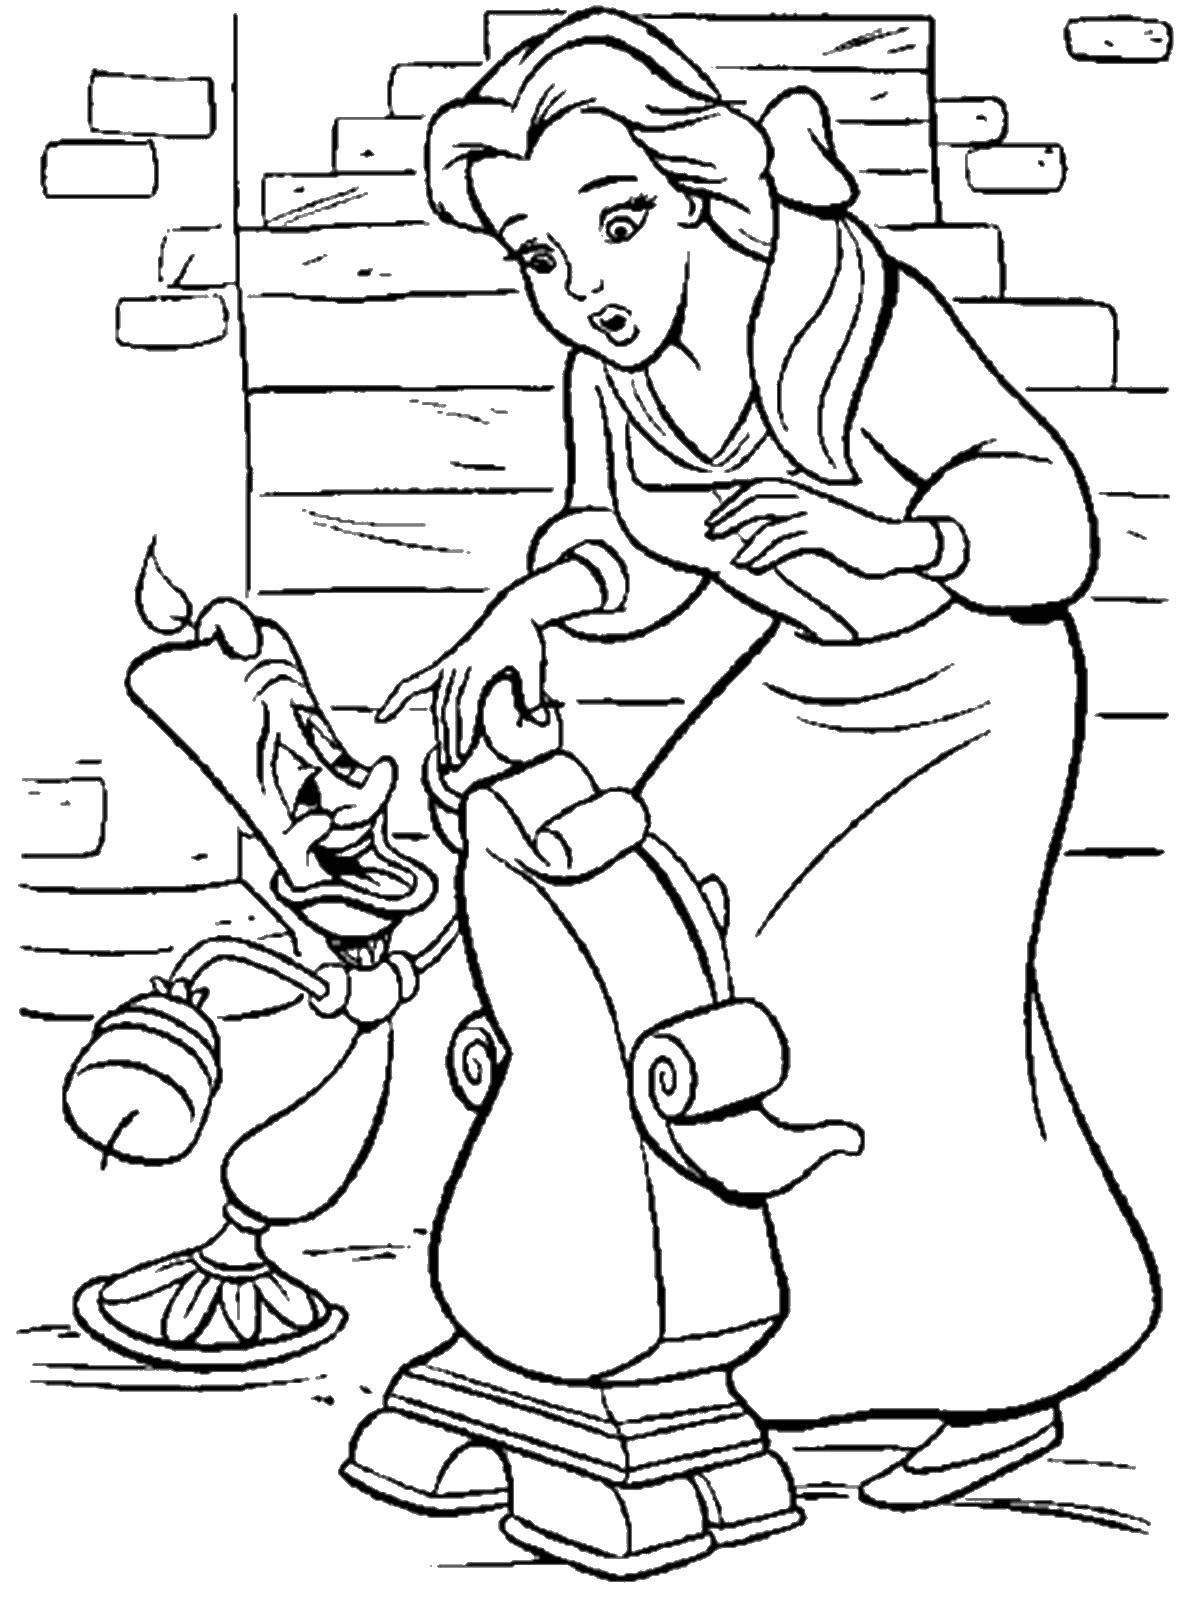 Раскраски из мультфильма Красавица и чудовище для детей  Белл пришла в гости